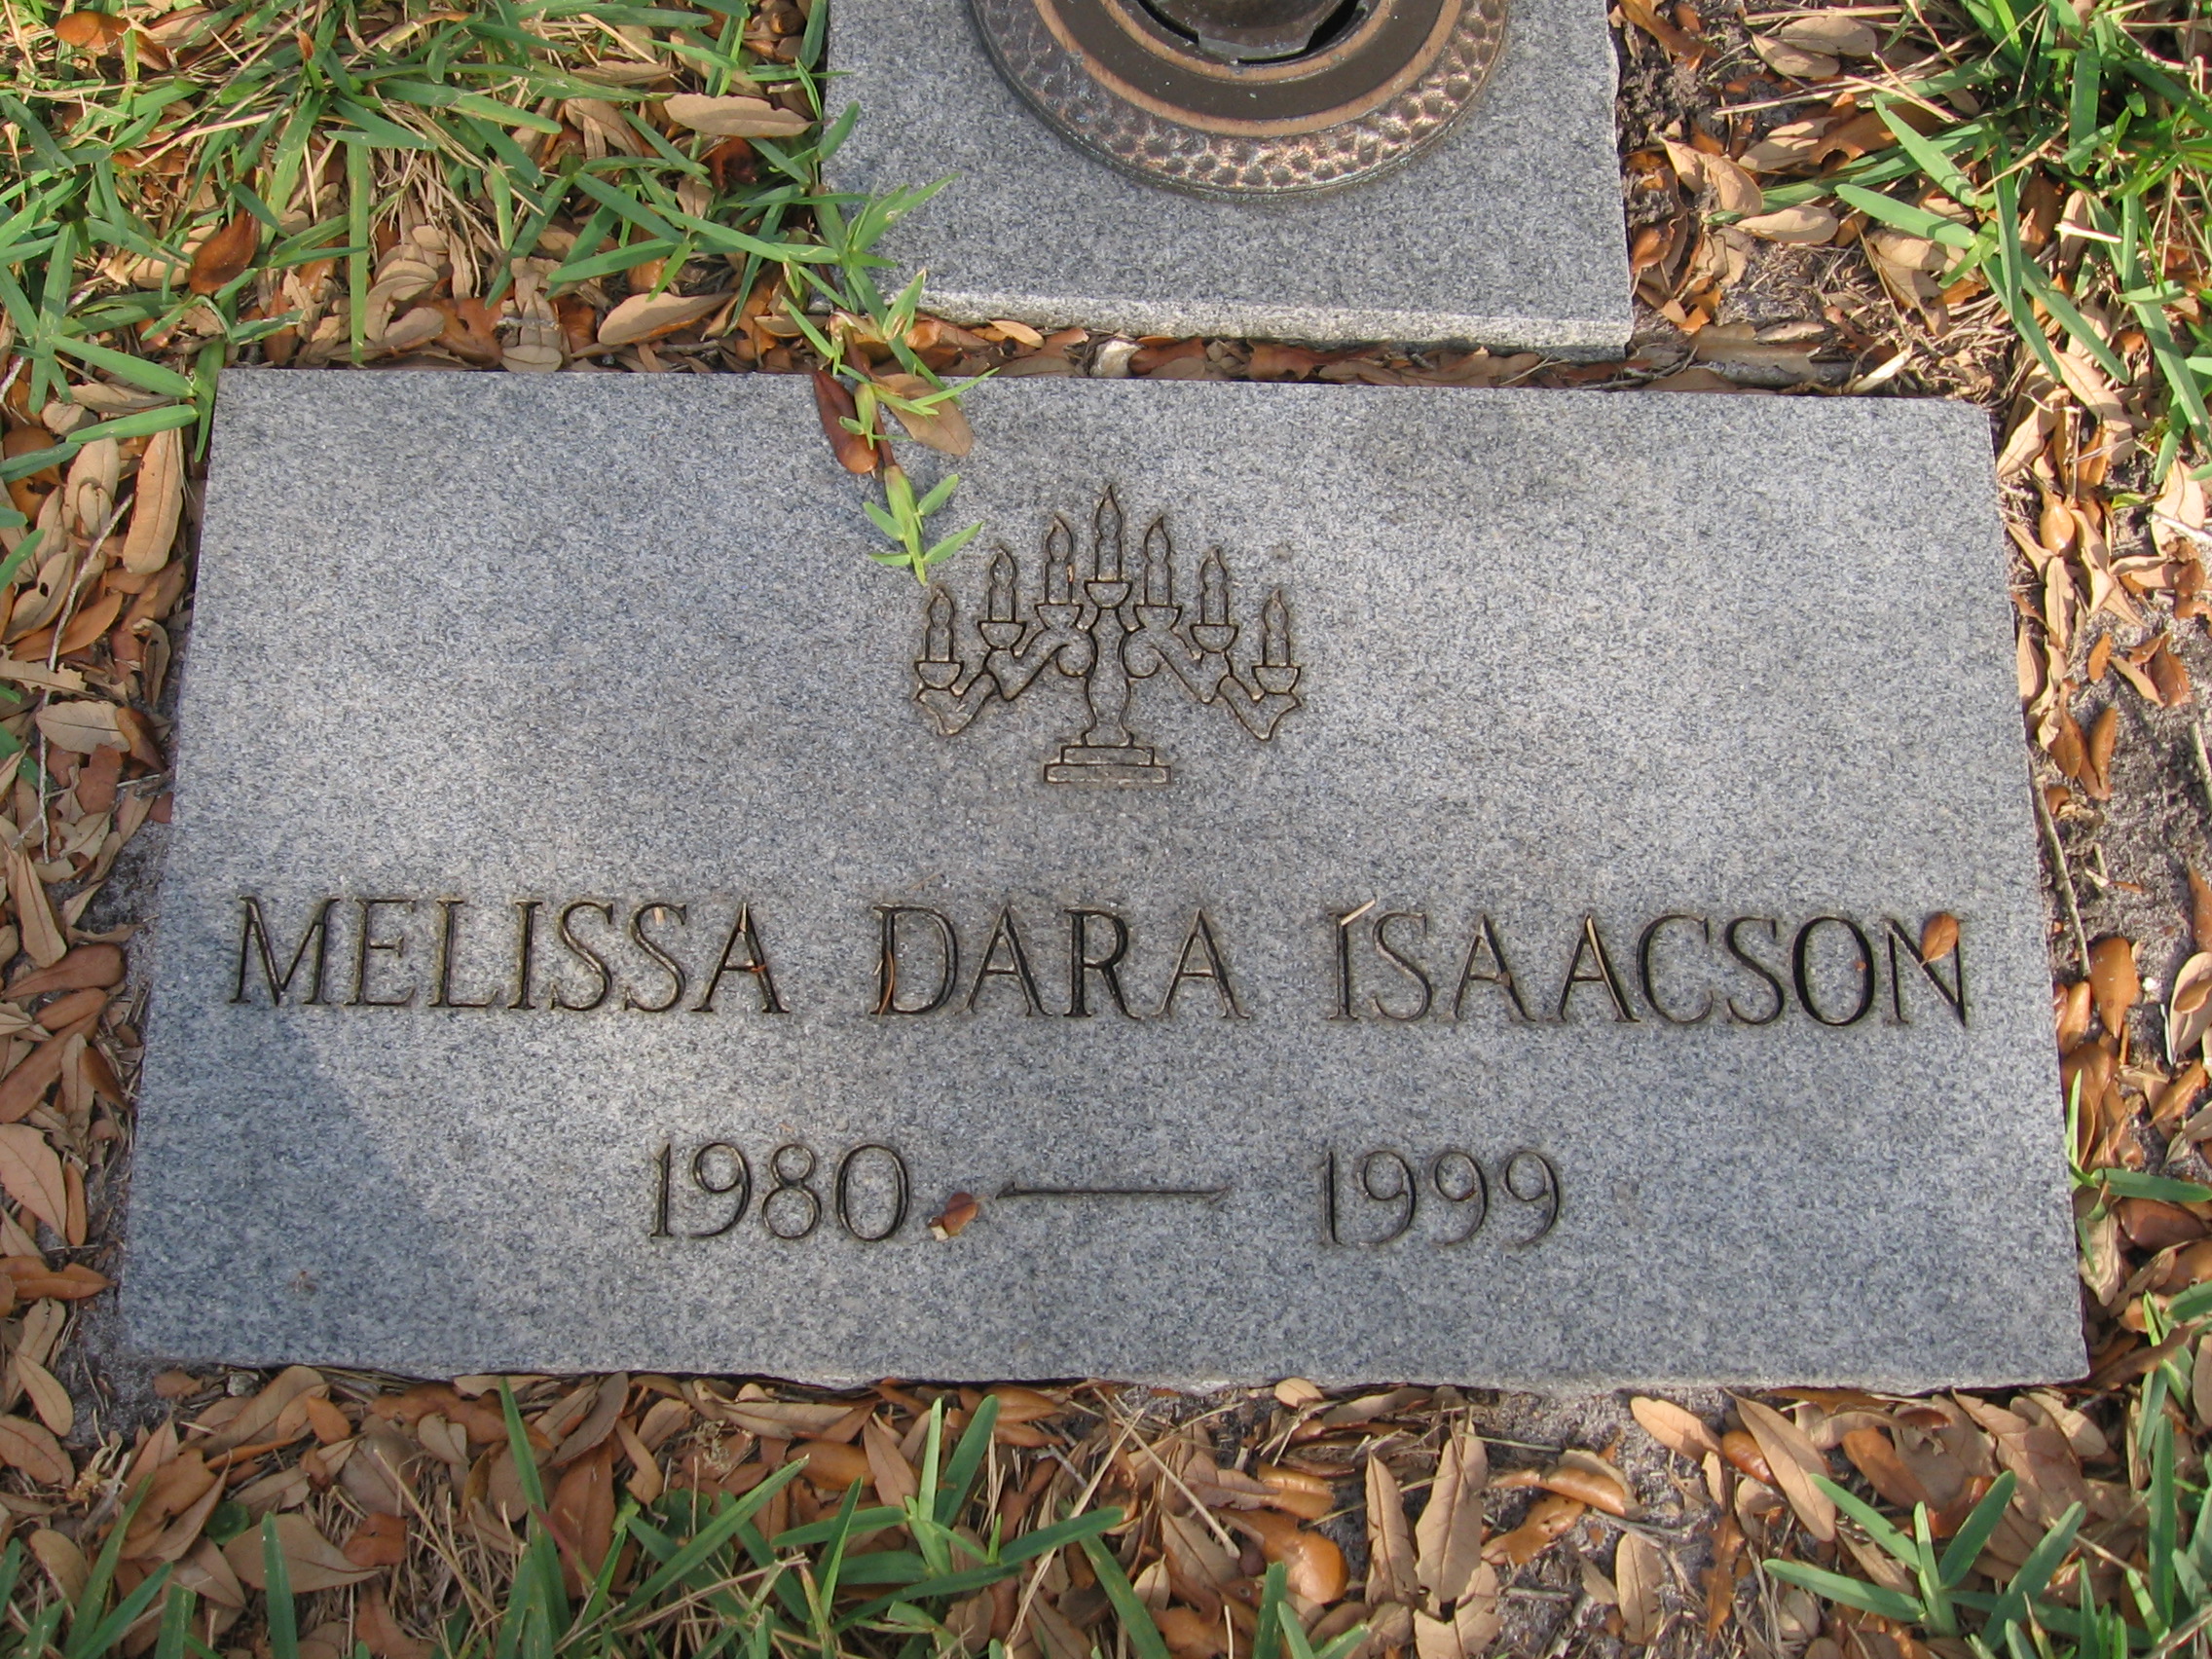 Melissa Dara Isaacson